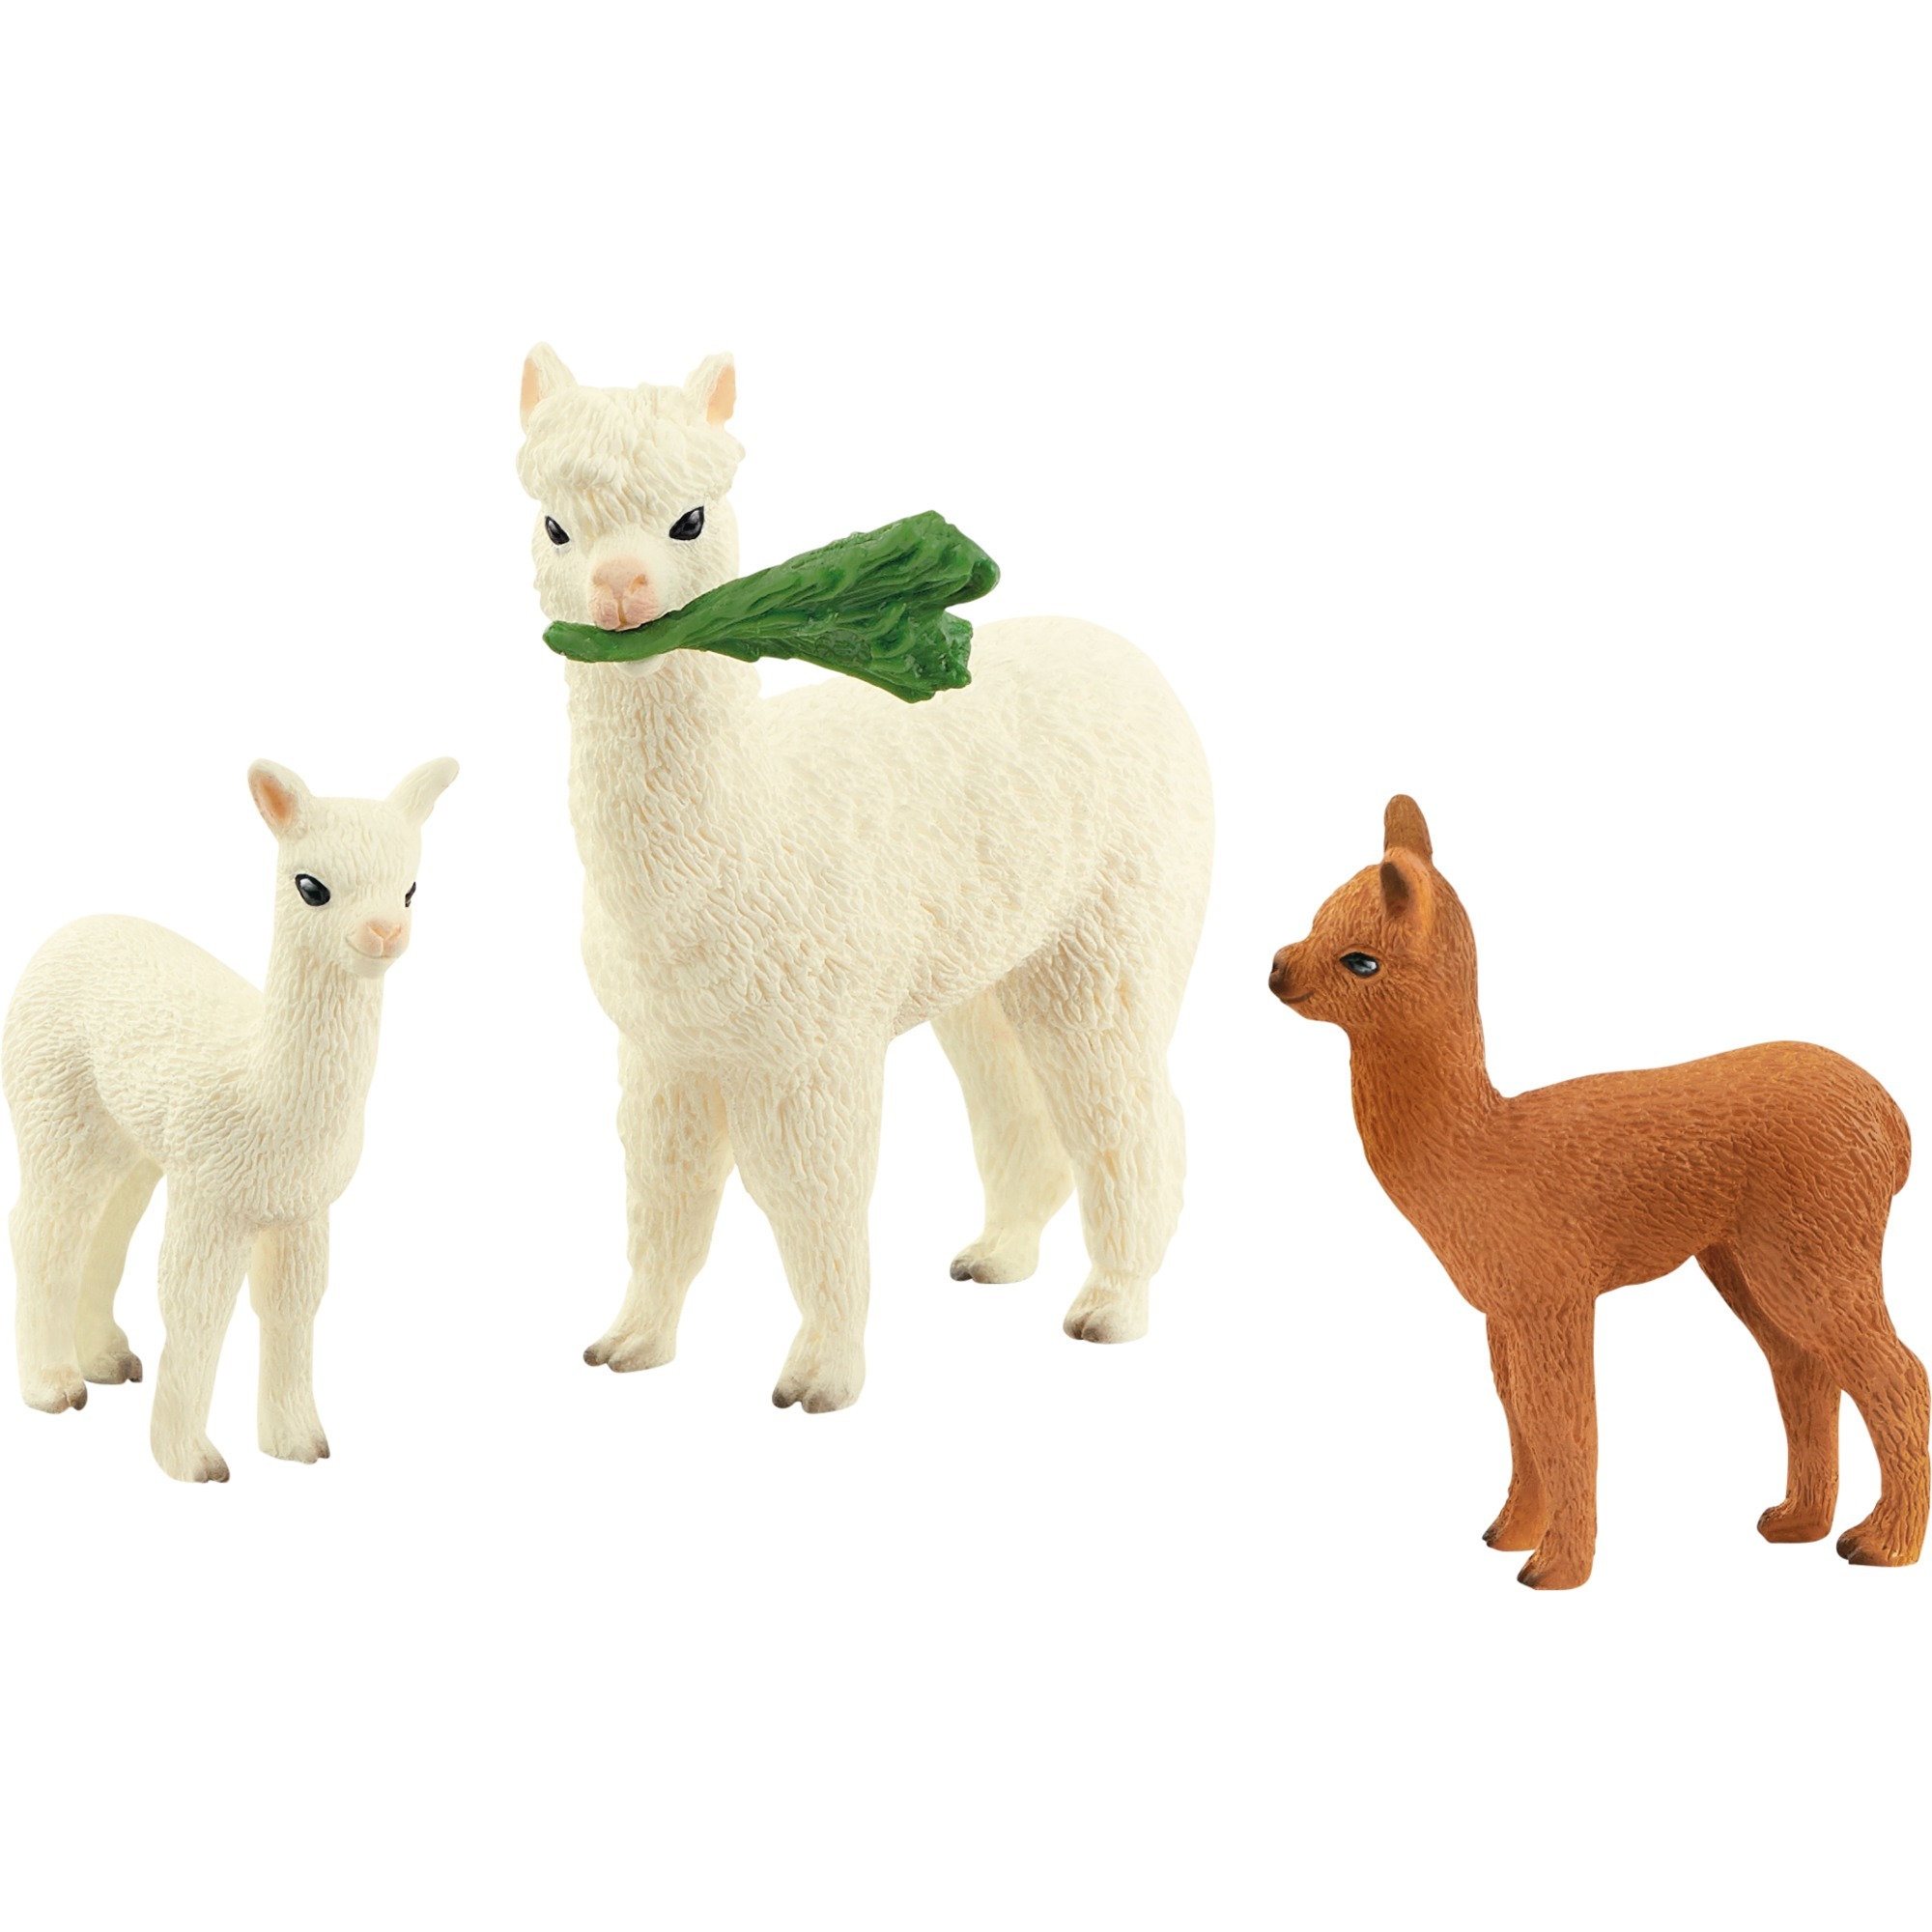 Image of Alternate - Alpakafamilie, Spielfigur online einkaufen bei Alternate